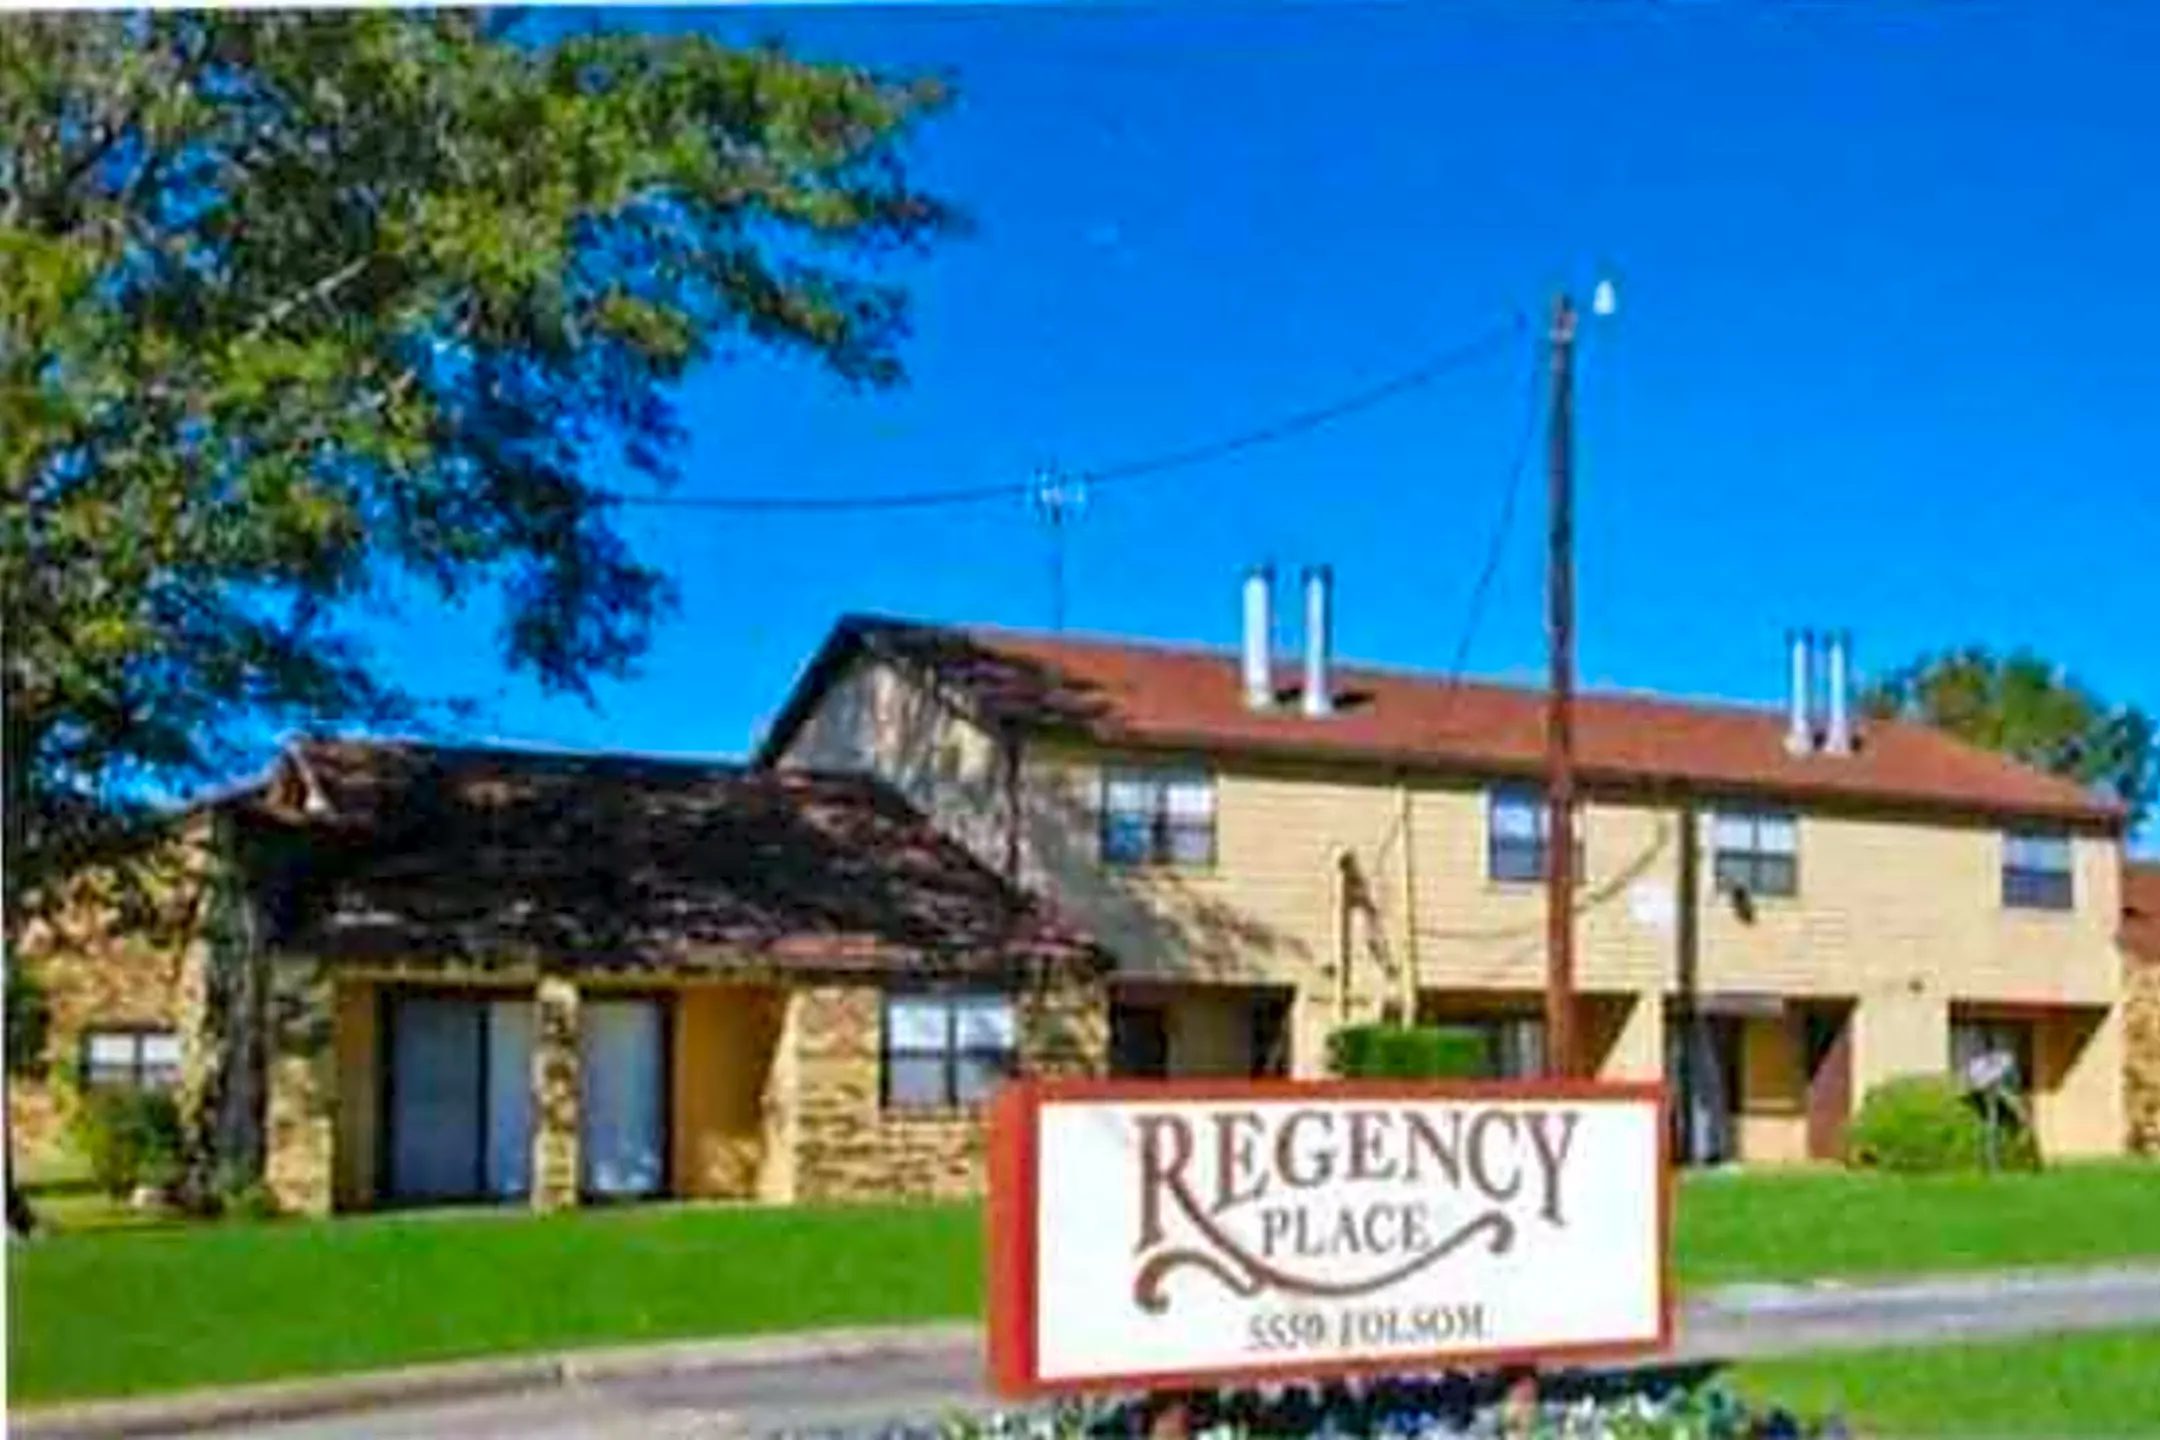 Building - Regency Place Apartments - Beaumont, TX